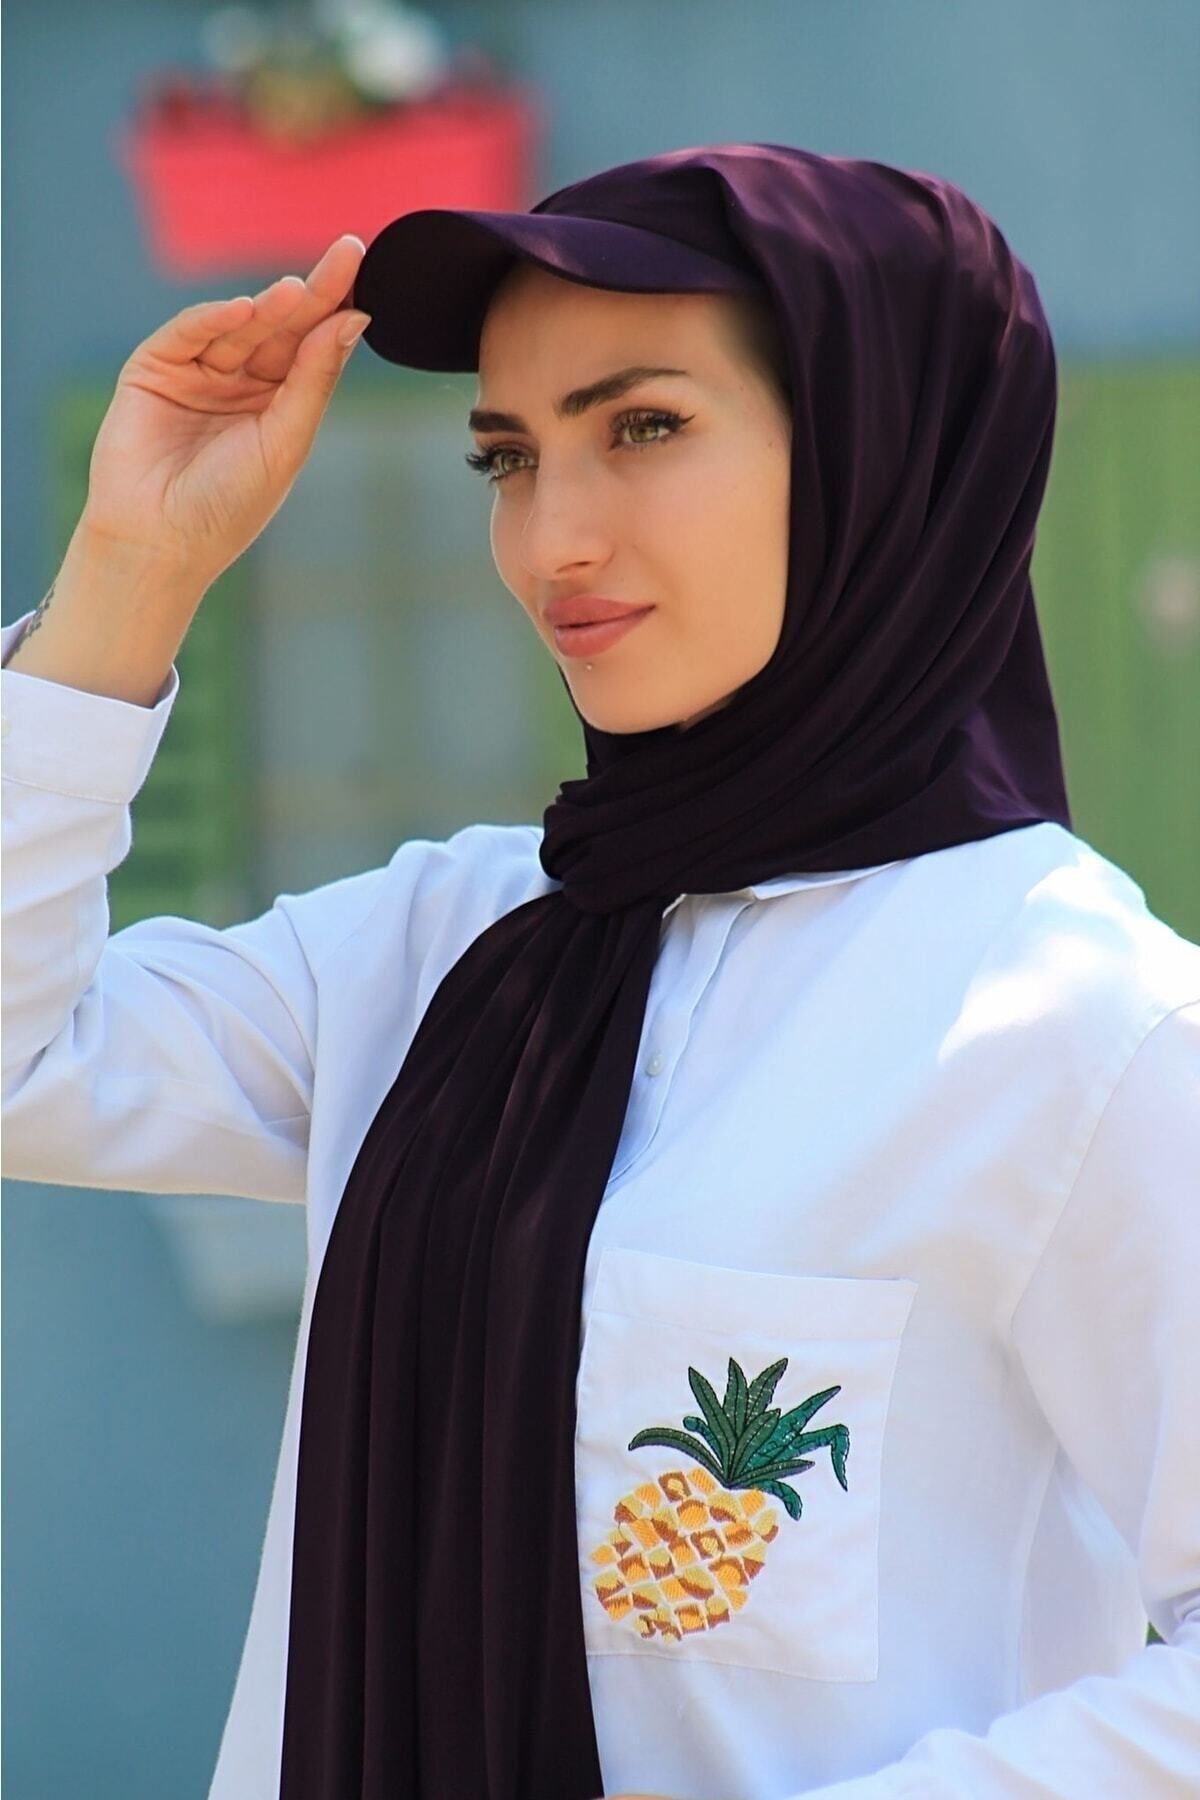 NIDAGE Mor Şapkalı Boneli Hazır Model Şal Hijab Havuz Bone - Yeni Sezon / Yeni Model